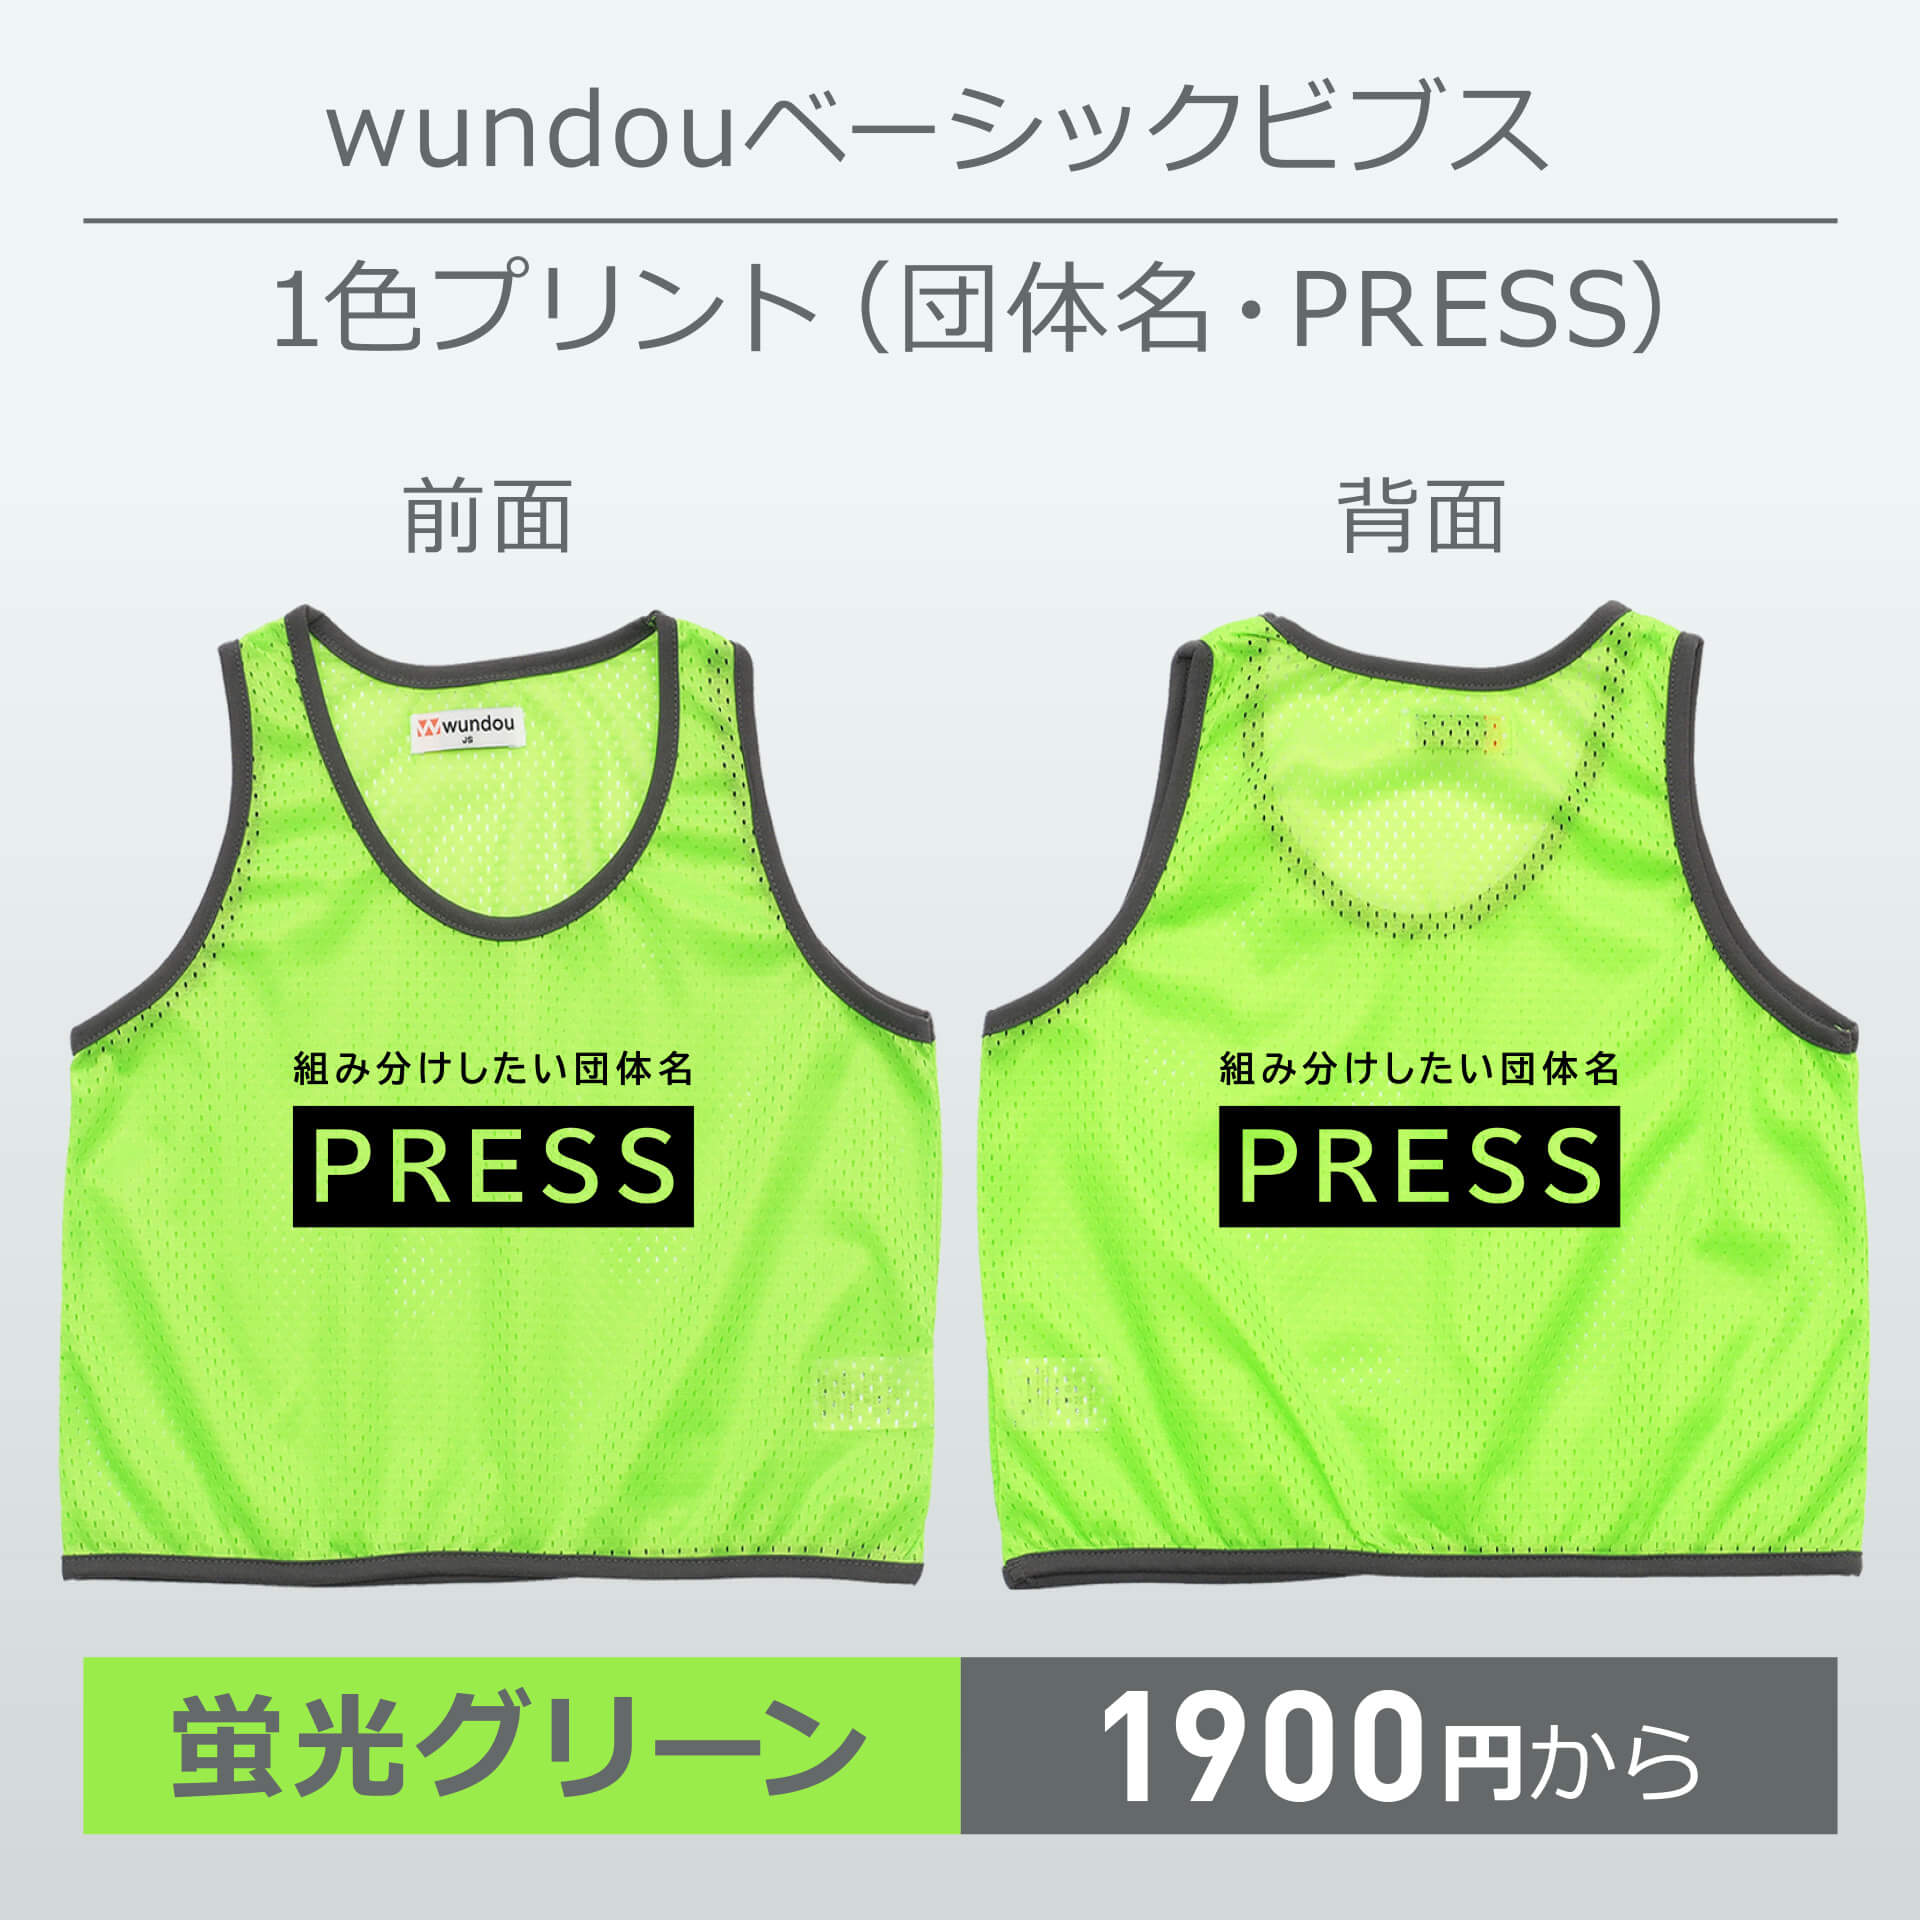 wundou・ベーシックビブス・1色プリント(団体名・PRESS)・蛍光グリーン